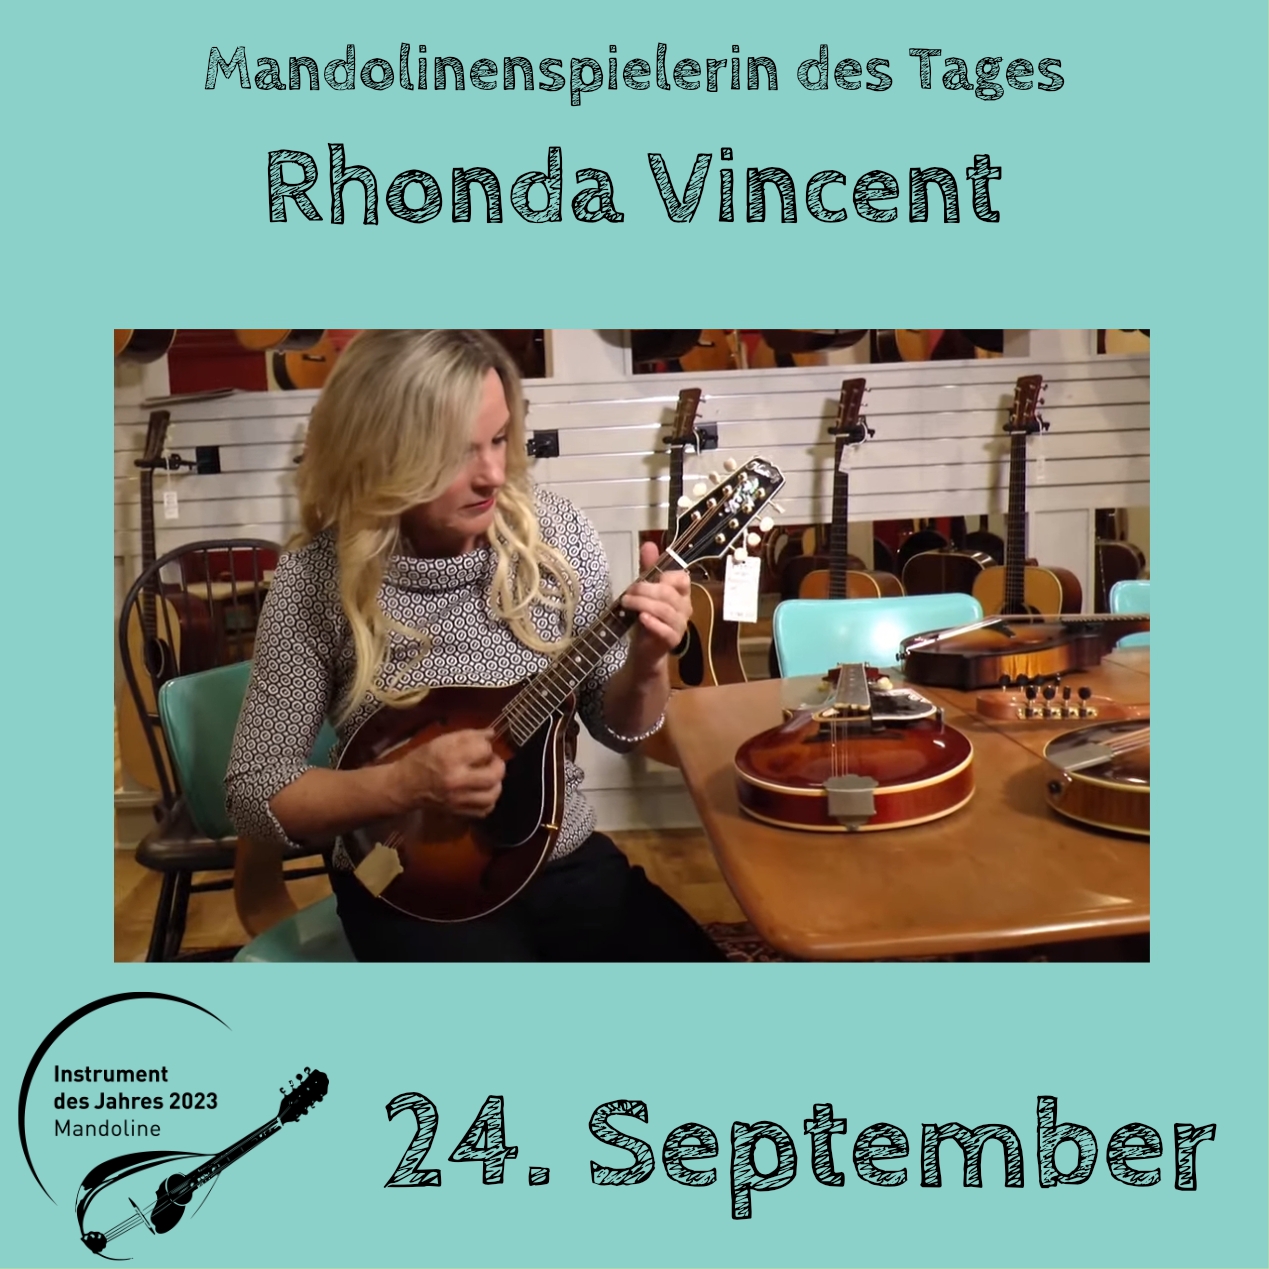 24. September - Rhonda Vincent Mandoline Instrument des Jahres 2023 Mandolinenspieler Mandolinenspielerin des Tages